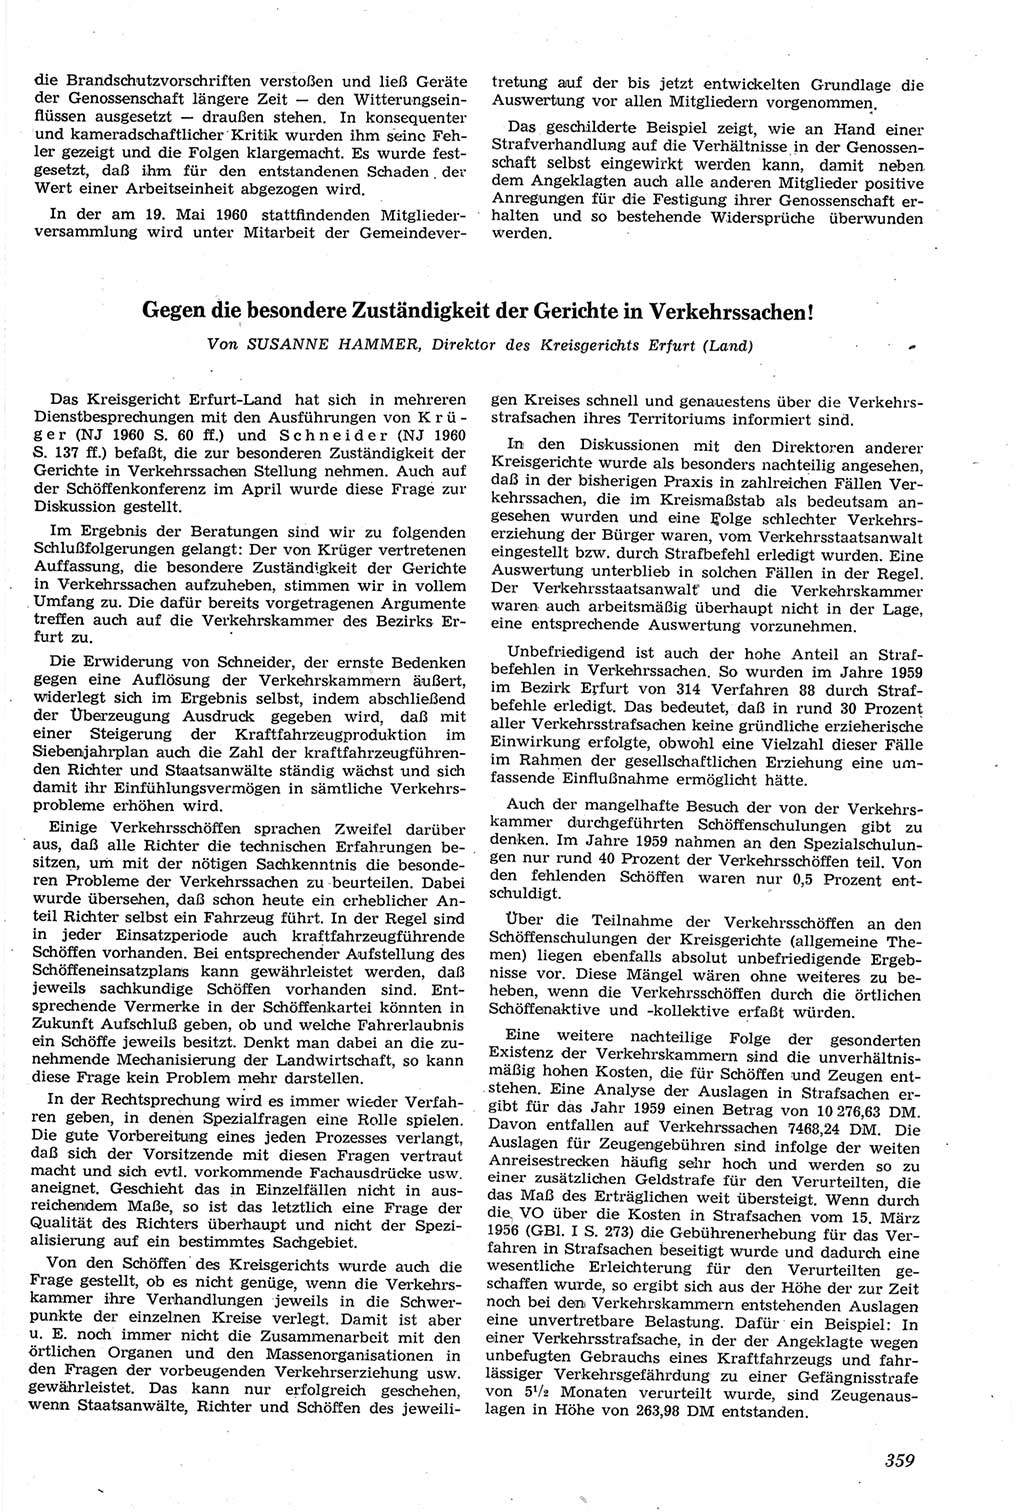 Neue Justiz (NJ), Zeitschrift für Recht und Rechtswissenschaft [Deutsche Demokratische Republik (DDR)], 14. Jahrgang 1960, Seite 359 (NJ DDR 1960, S. 359)